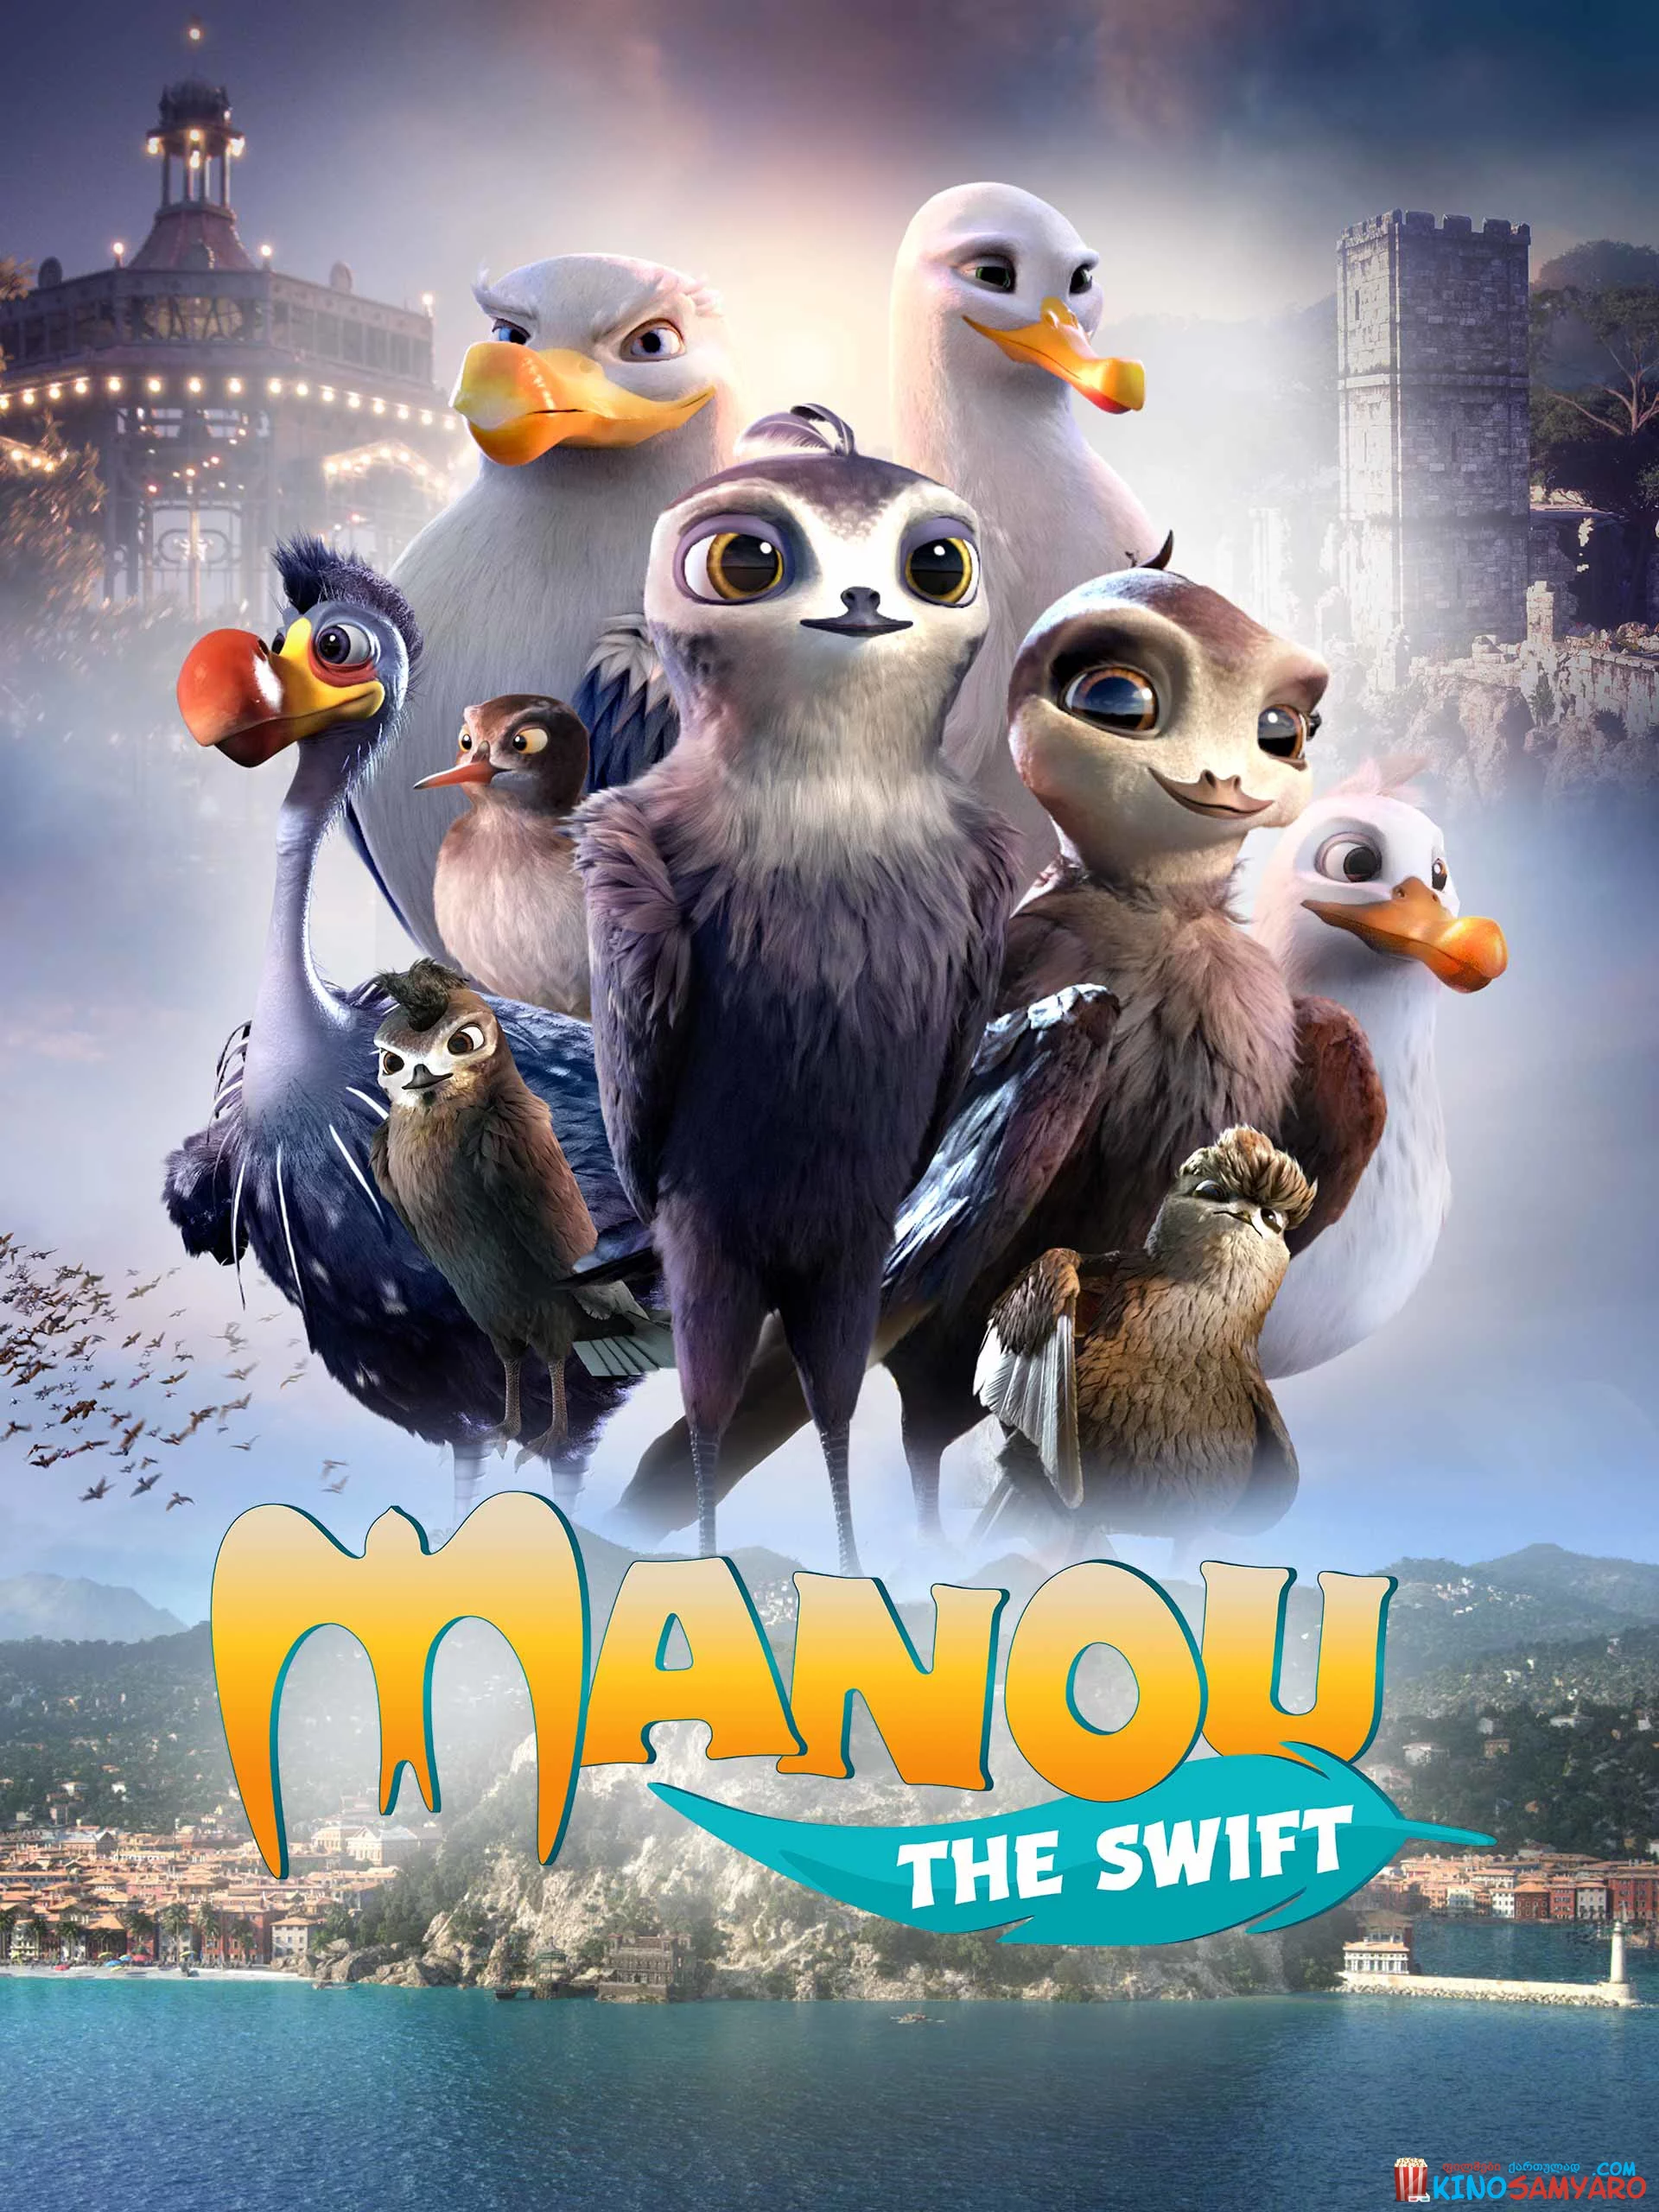 ნამგალა მანუ / Manou the Swift